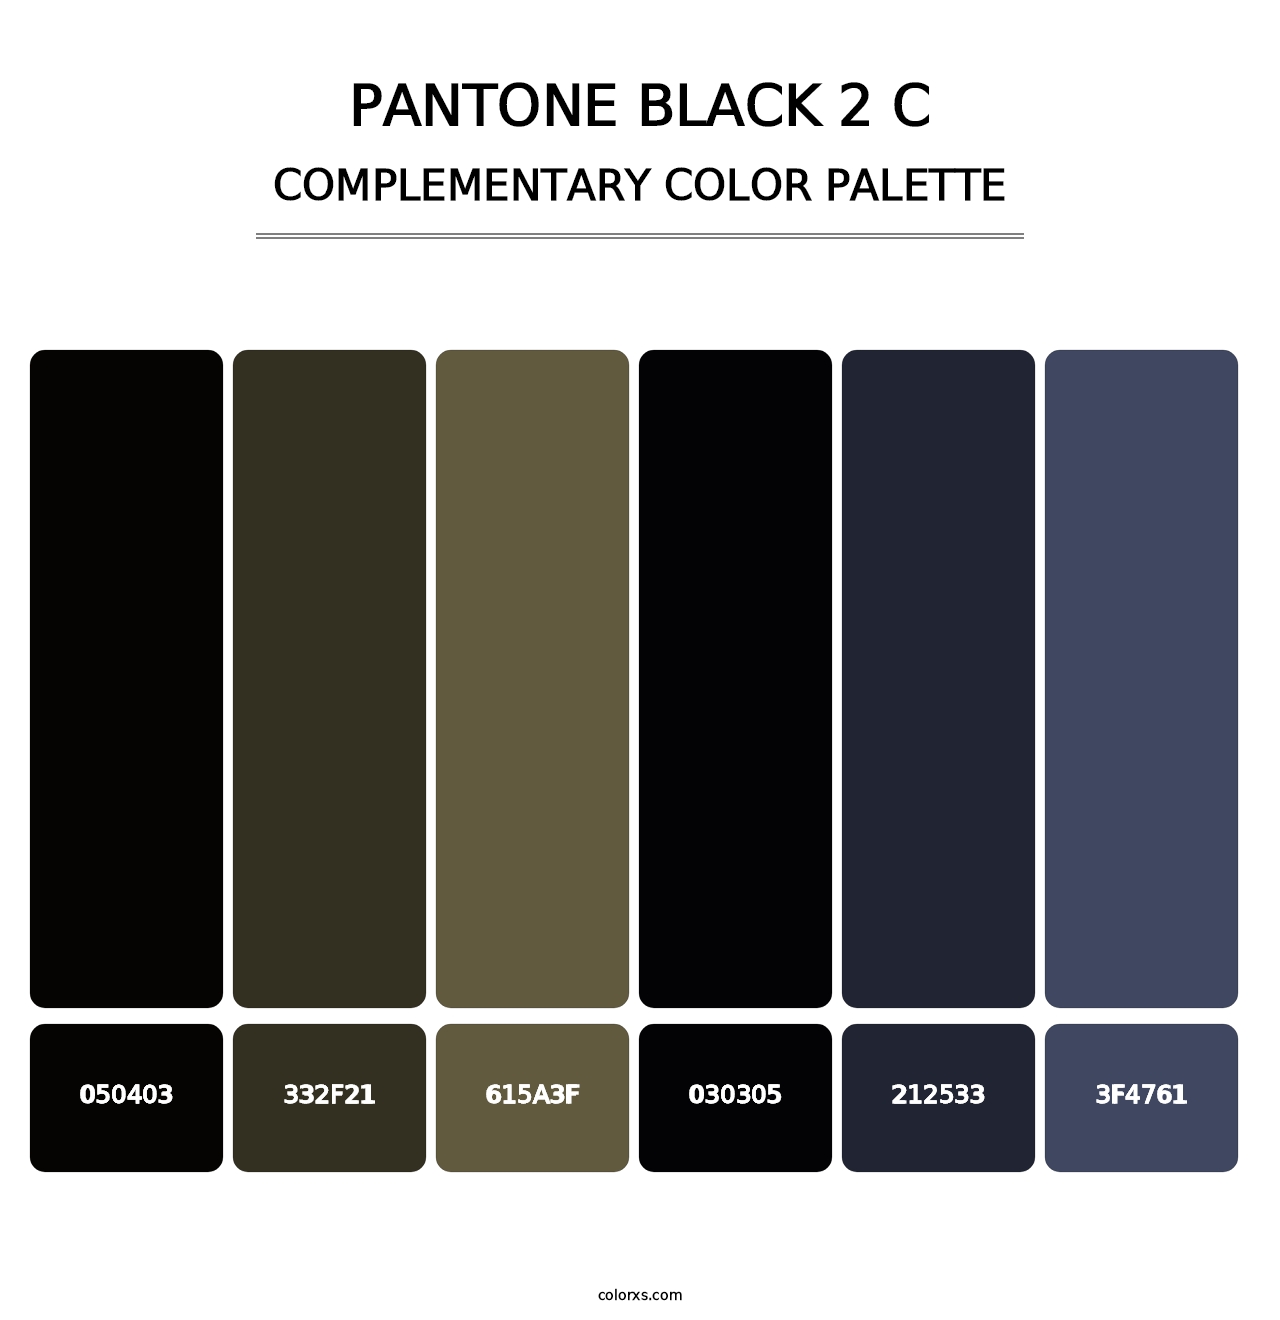 PANTONE Black 2 C - Complementary Color Palette